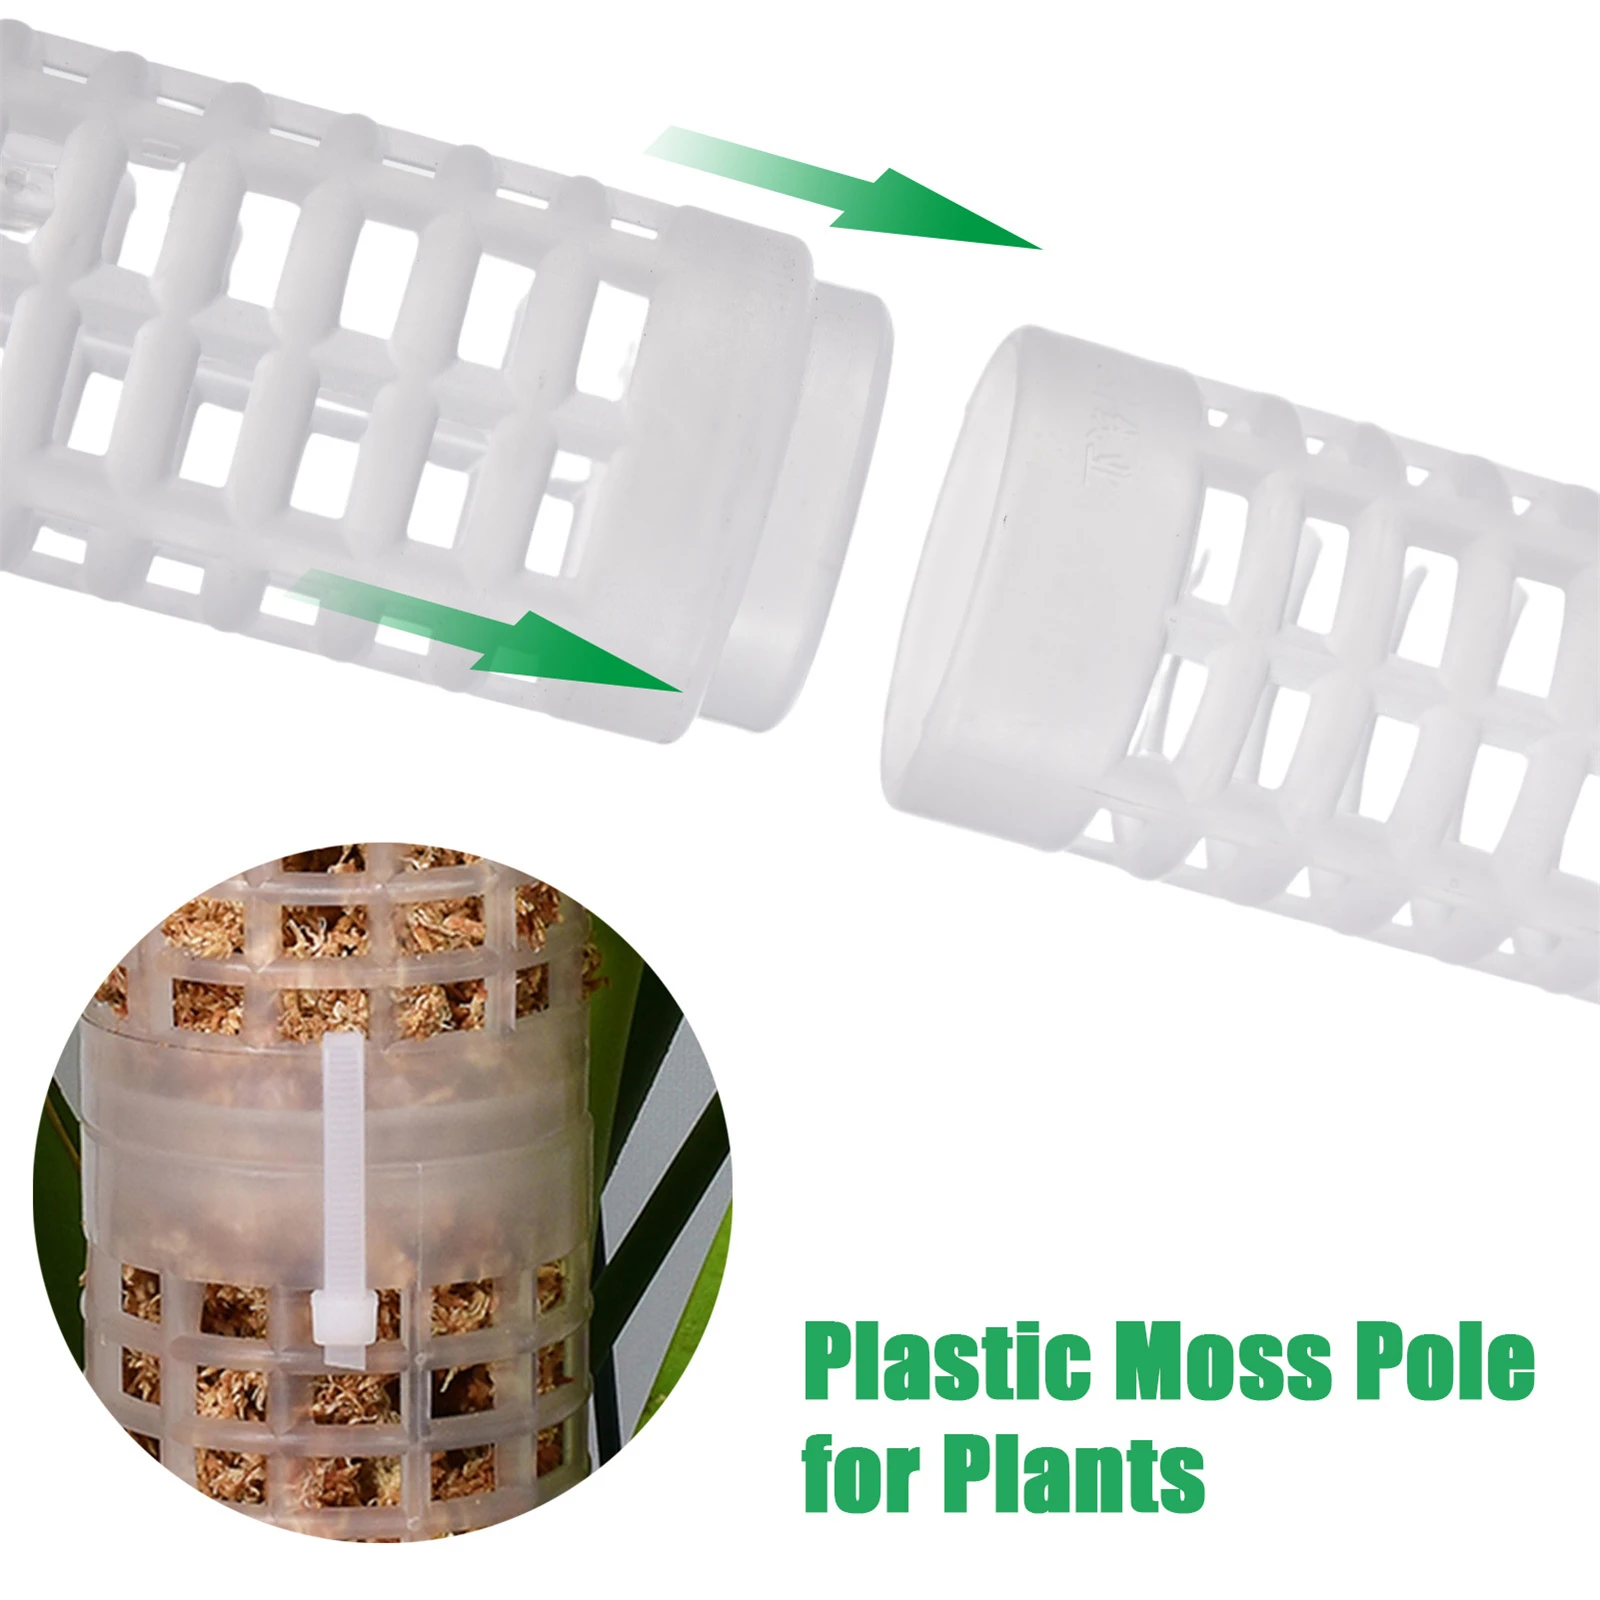 1 pçs plástico planta de escalada plantas de plástico empilhável pólo planta varas sphagnum musgo pólo pvc plástico planta de escalada suporte